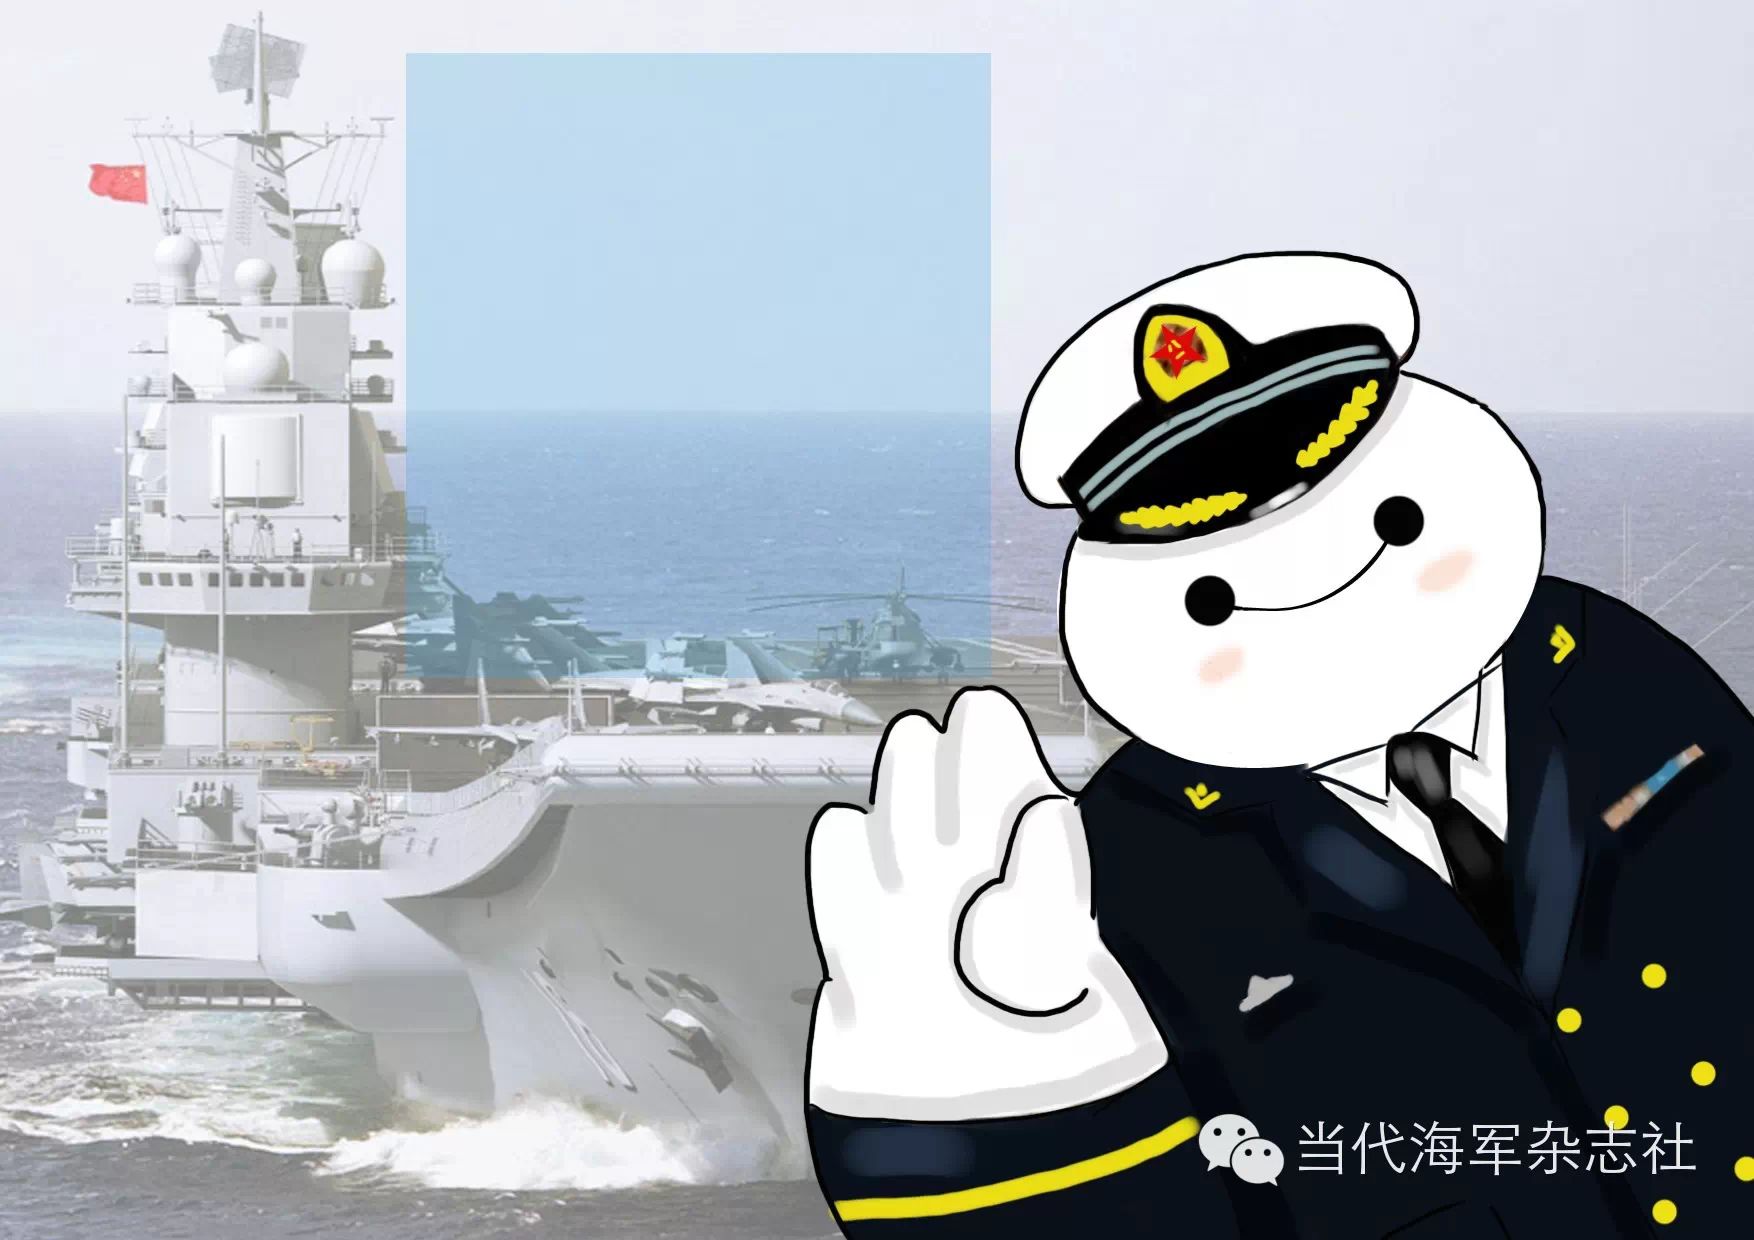 渔船远洋捕鱼获军舰护航:有种幸福叫中国海军来了